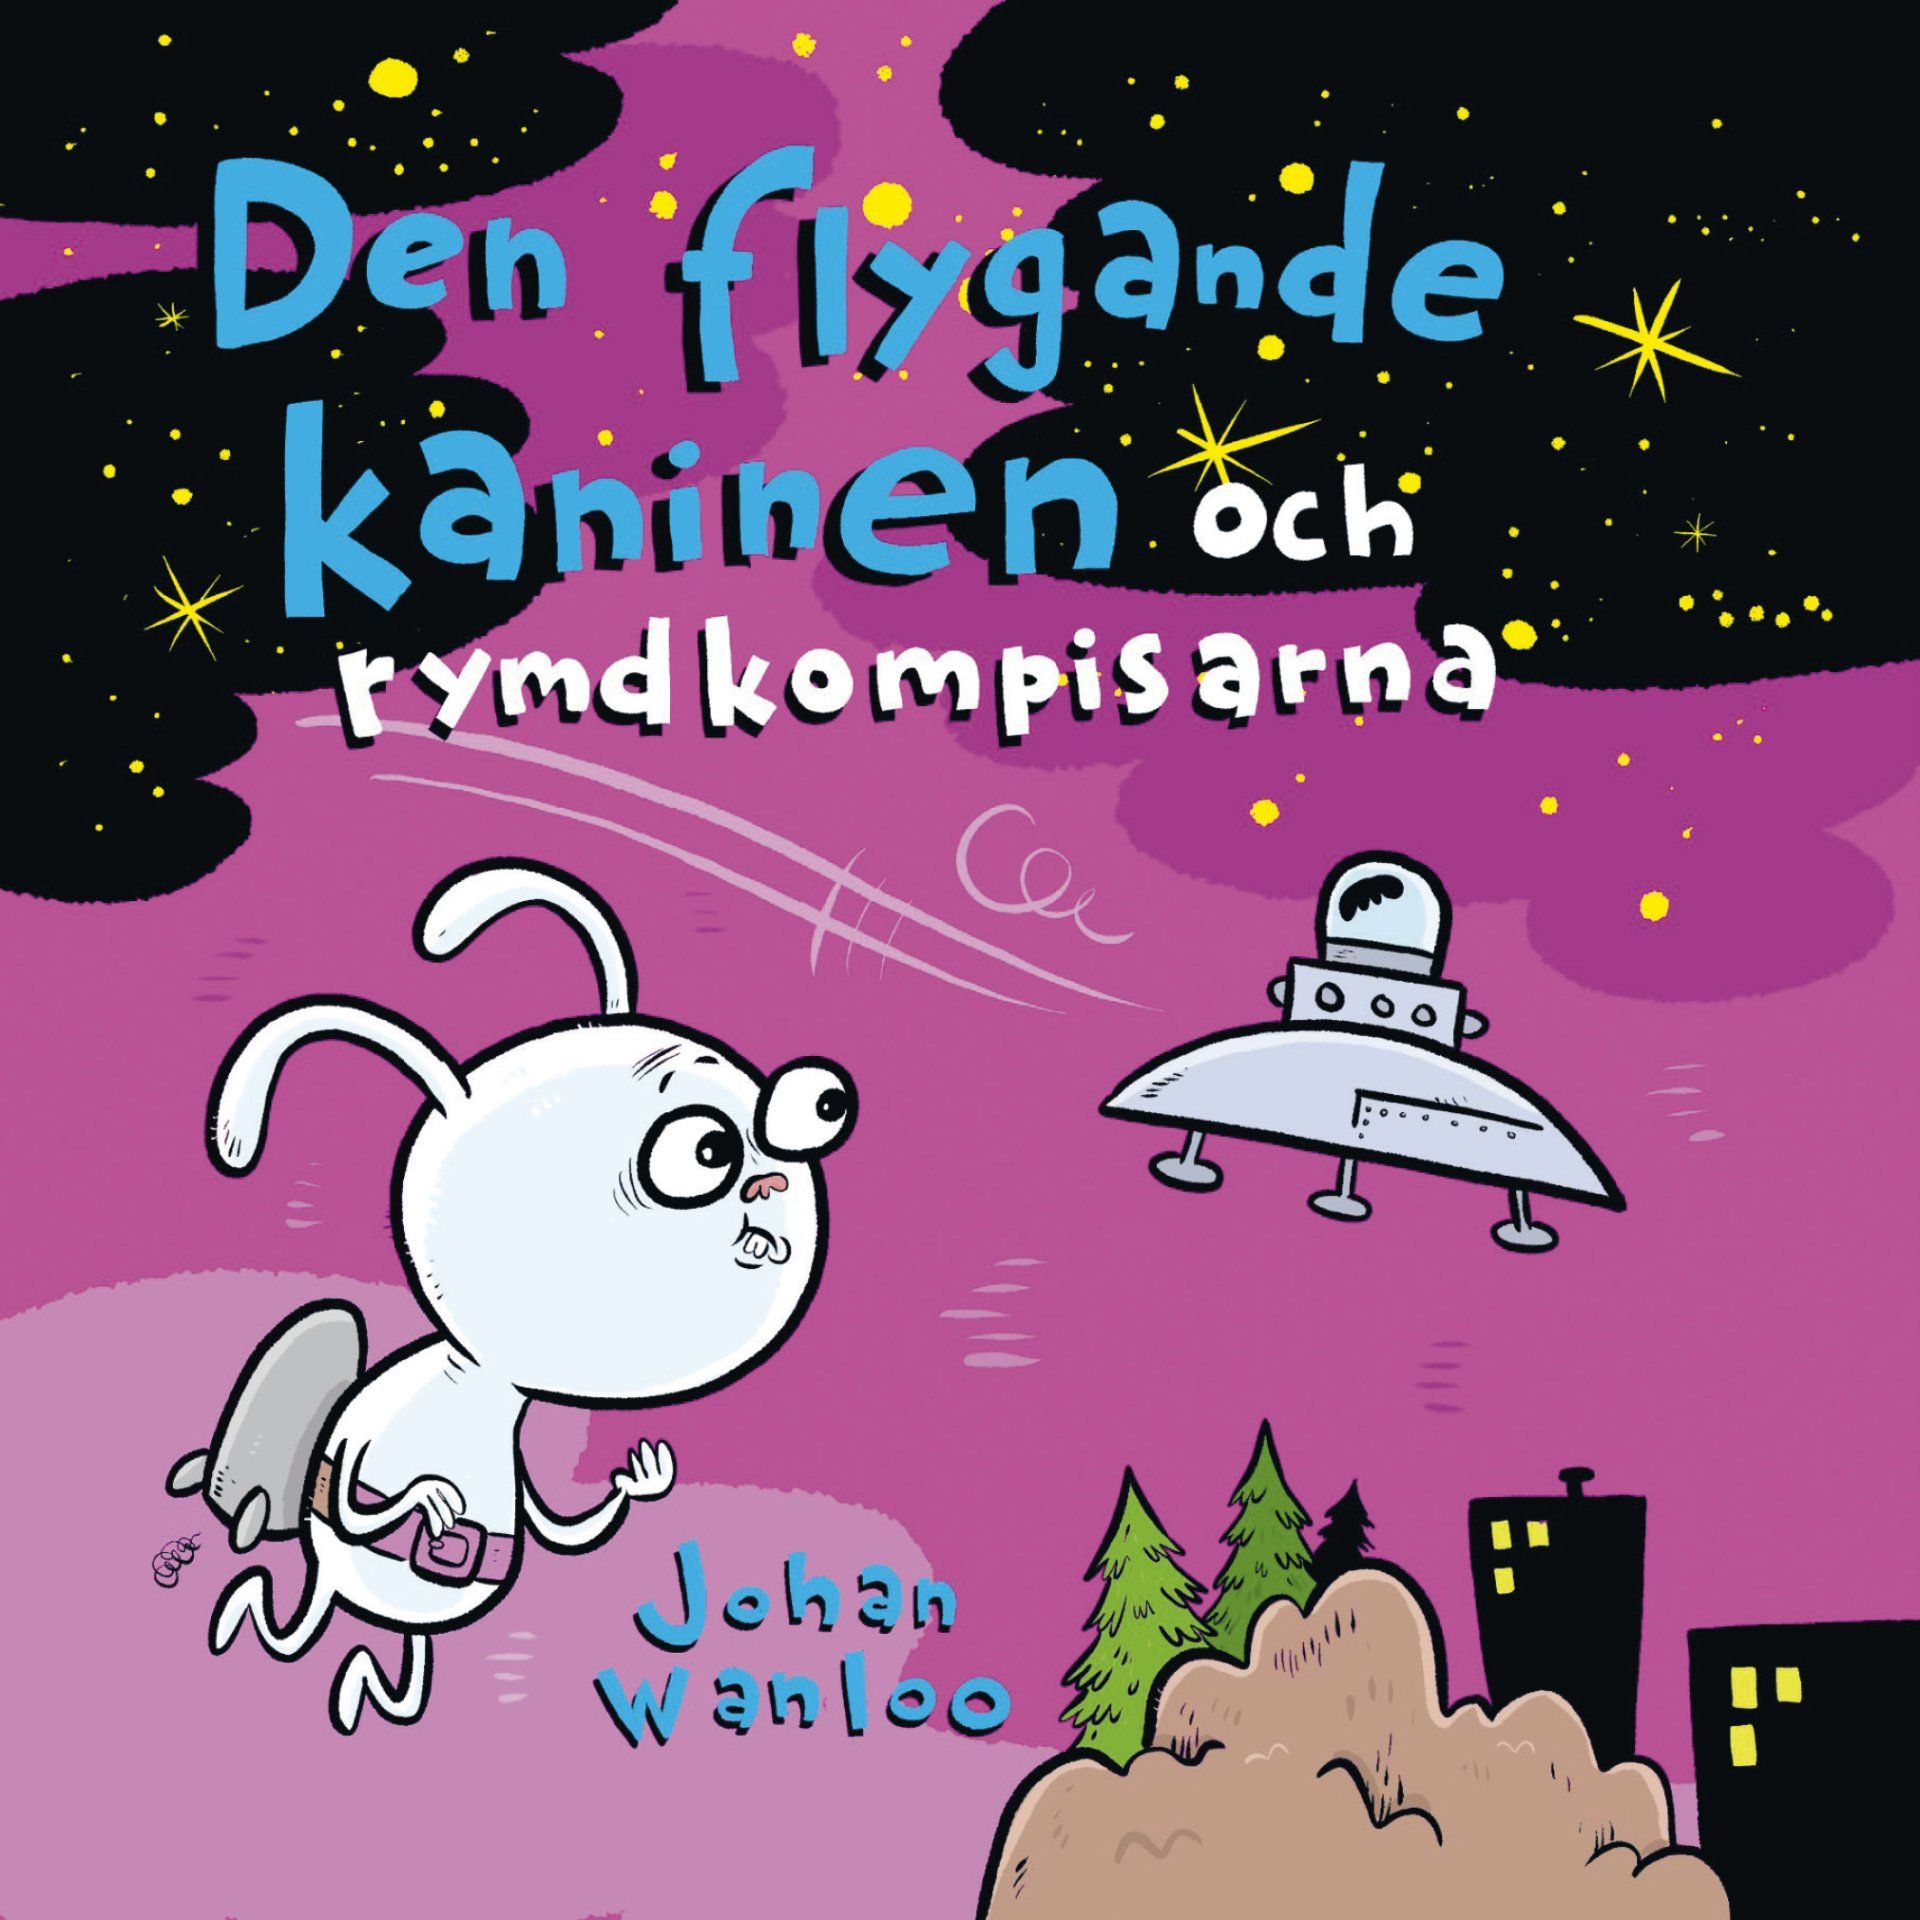 Barnboken Den flygande kaninen och rymdkompisarna är skriveav Johan Waloo på Stevali Bokförlag.